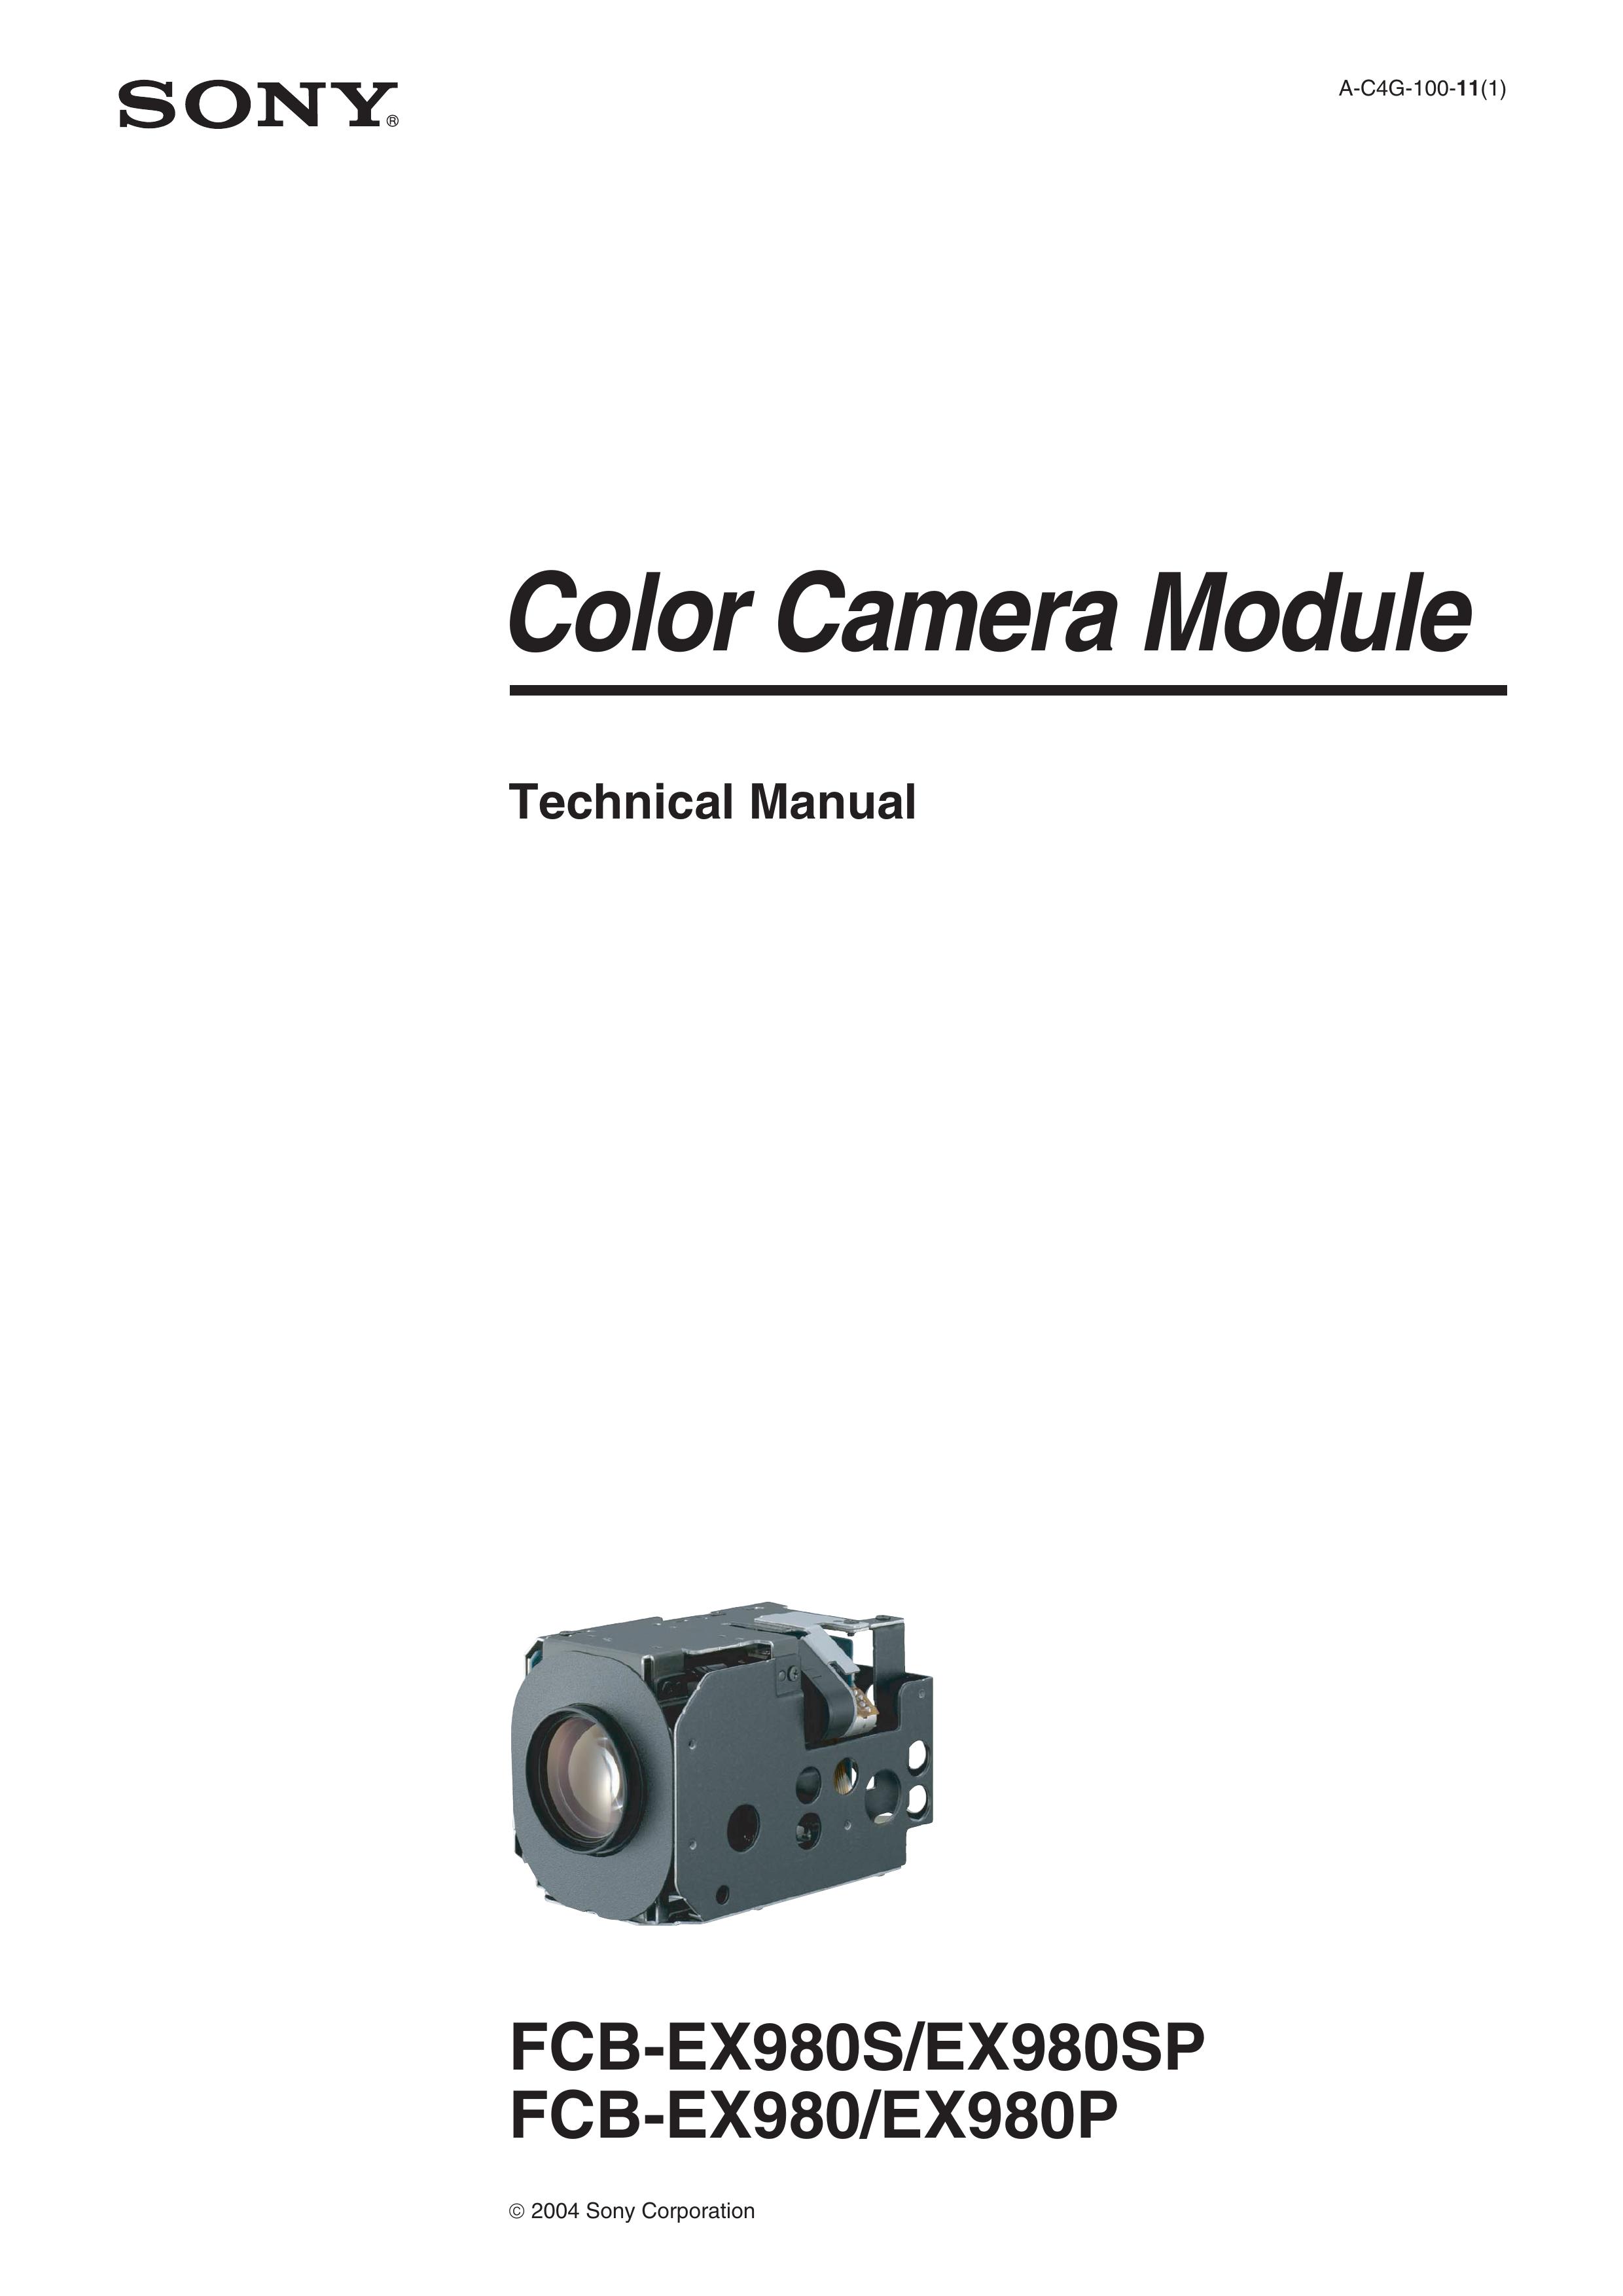 Sony FCB-EX980S, FCB-EX980SP, FCB-EX980, FCB-EX980P Security Camera User Manual